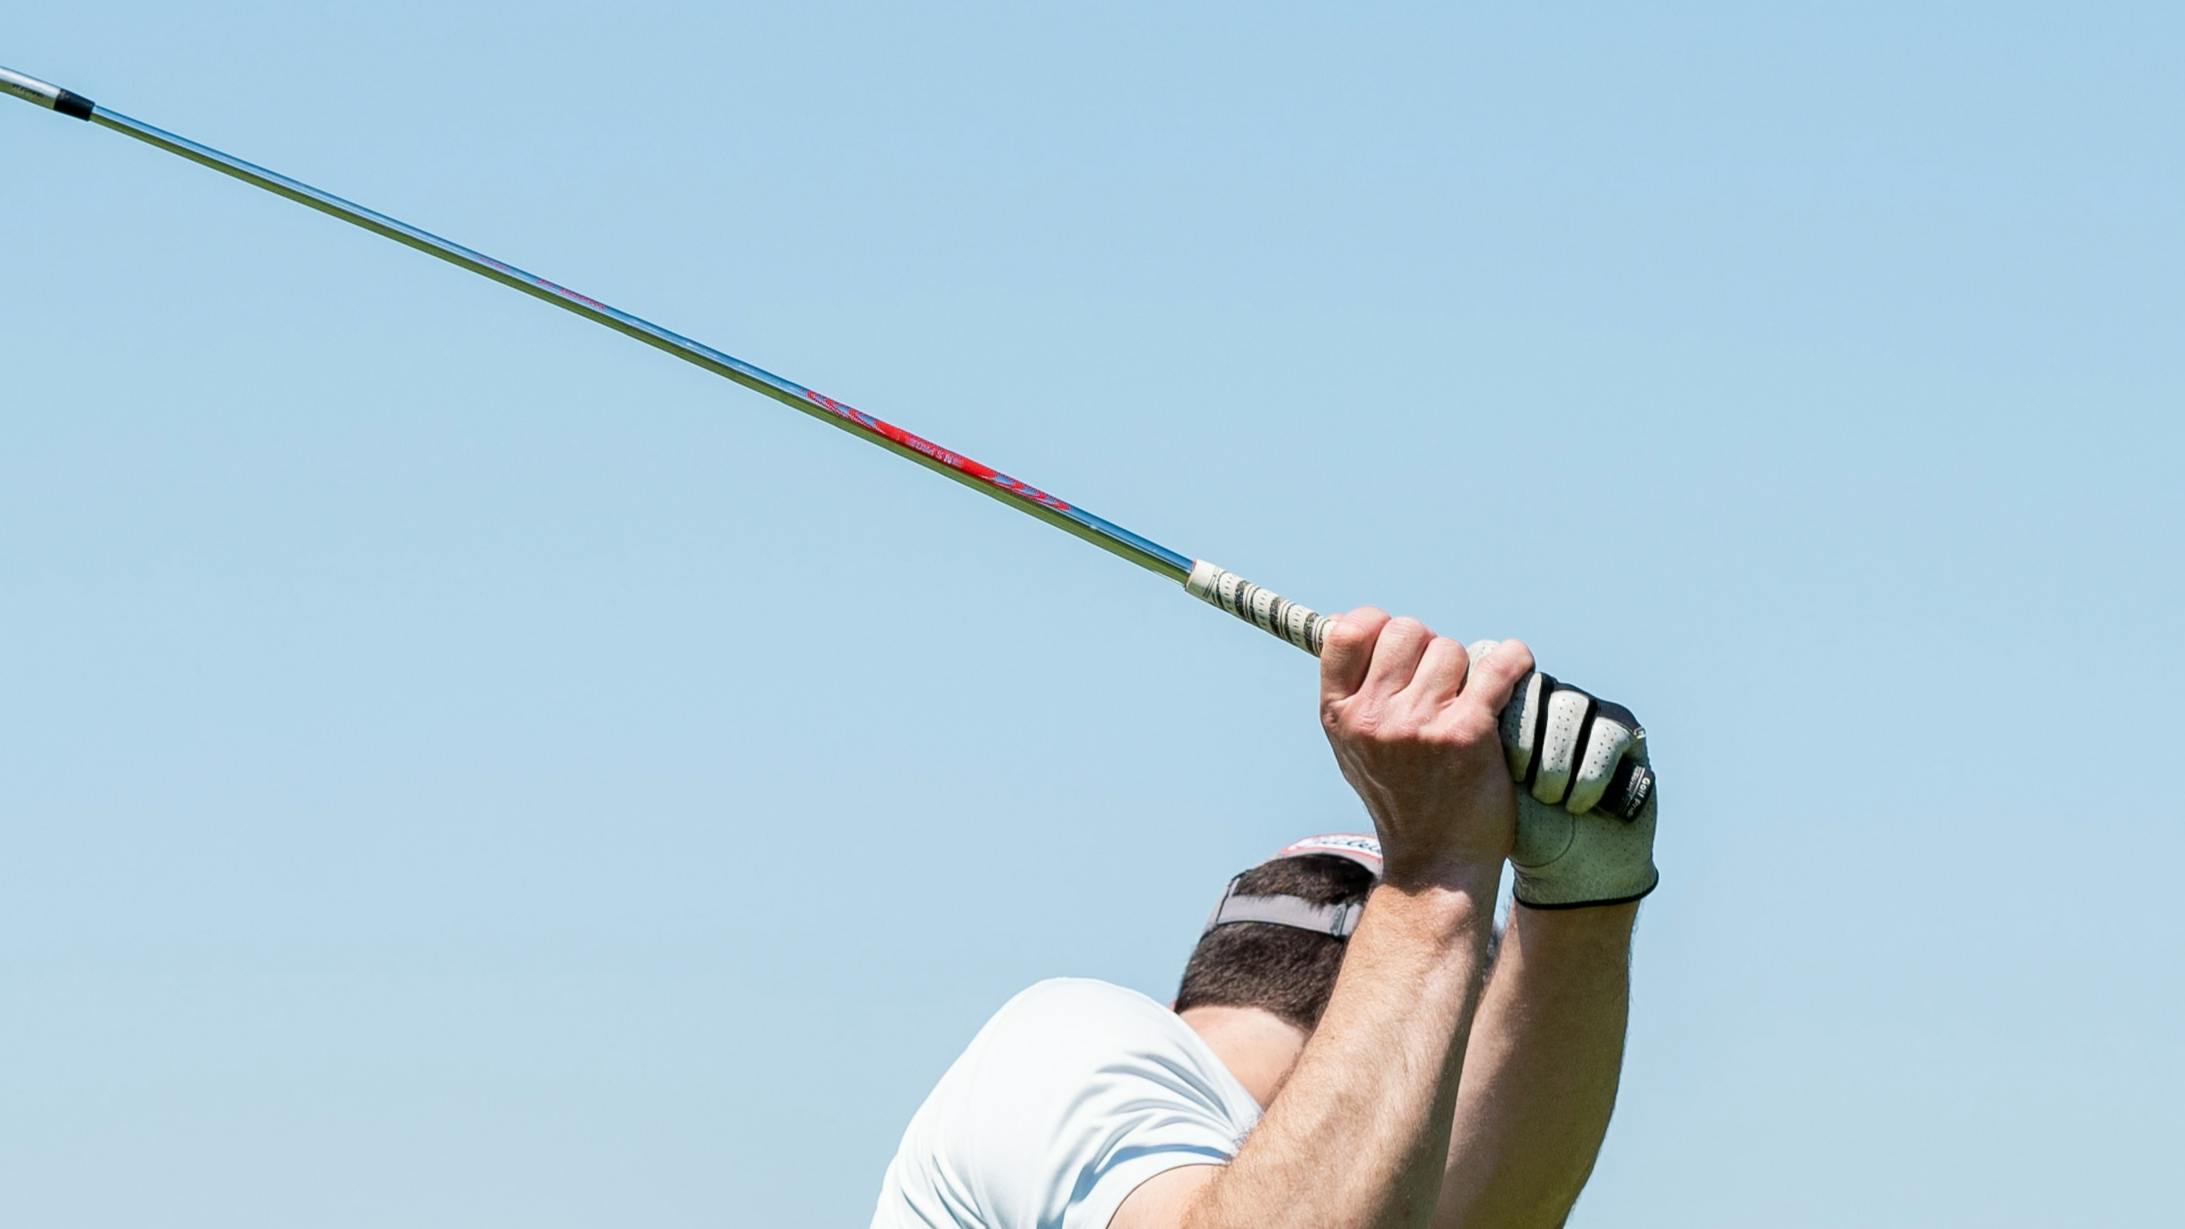 A golfer using an iron. 